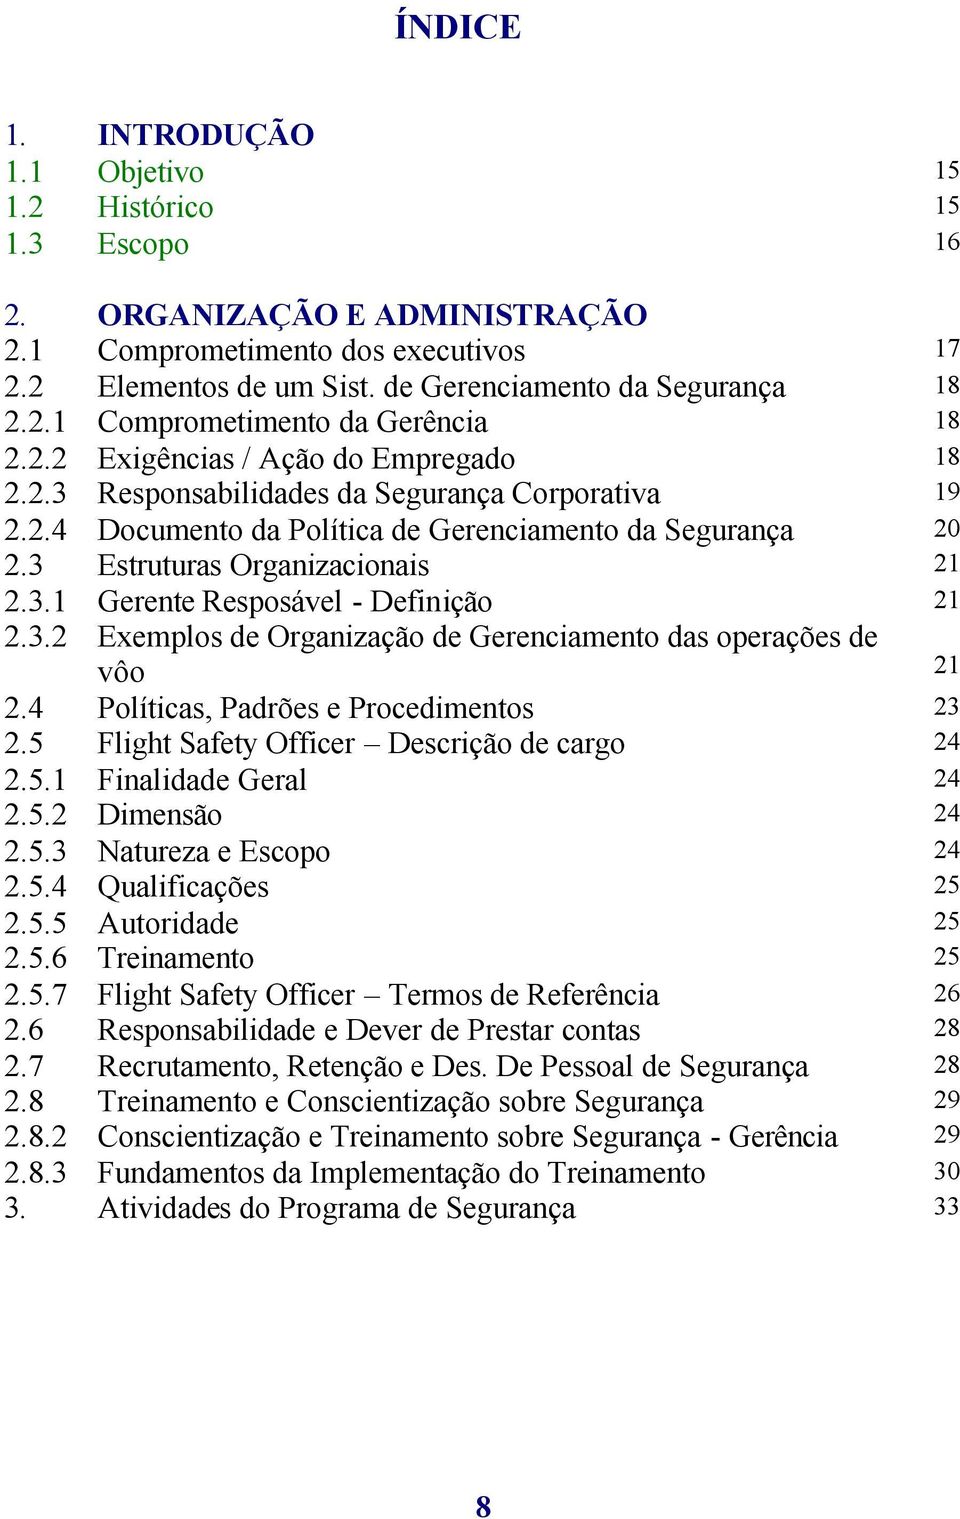 3.2 Exemplos de Organização de Gerenciamento das operações de vôo 21 2.4 Políticas, Padrões e Procedimentos 23 2.5 Flight Safety Officer Descrição de cargo 24 2.5.1 Finalidade Geral 24 2.5.2 Dimensão 24 2.